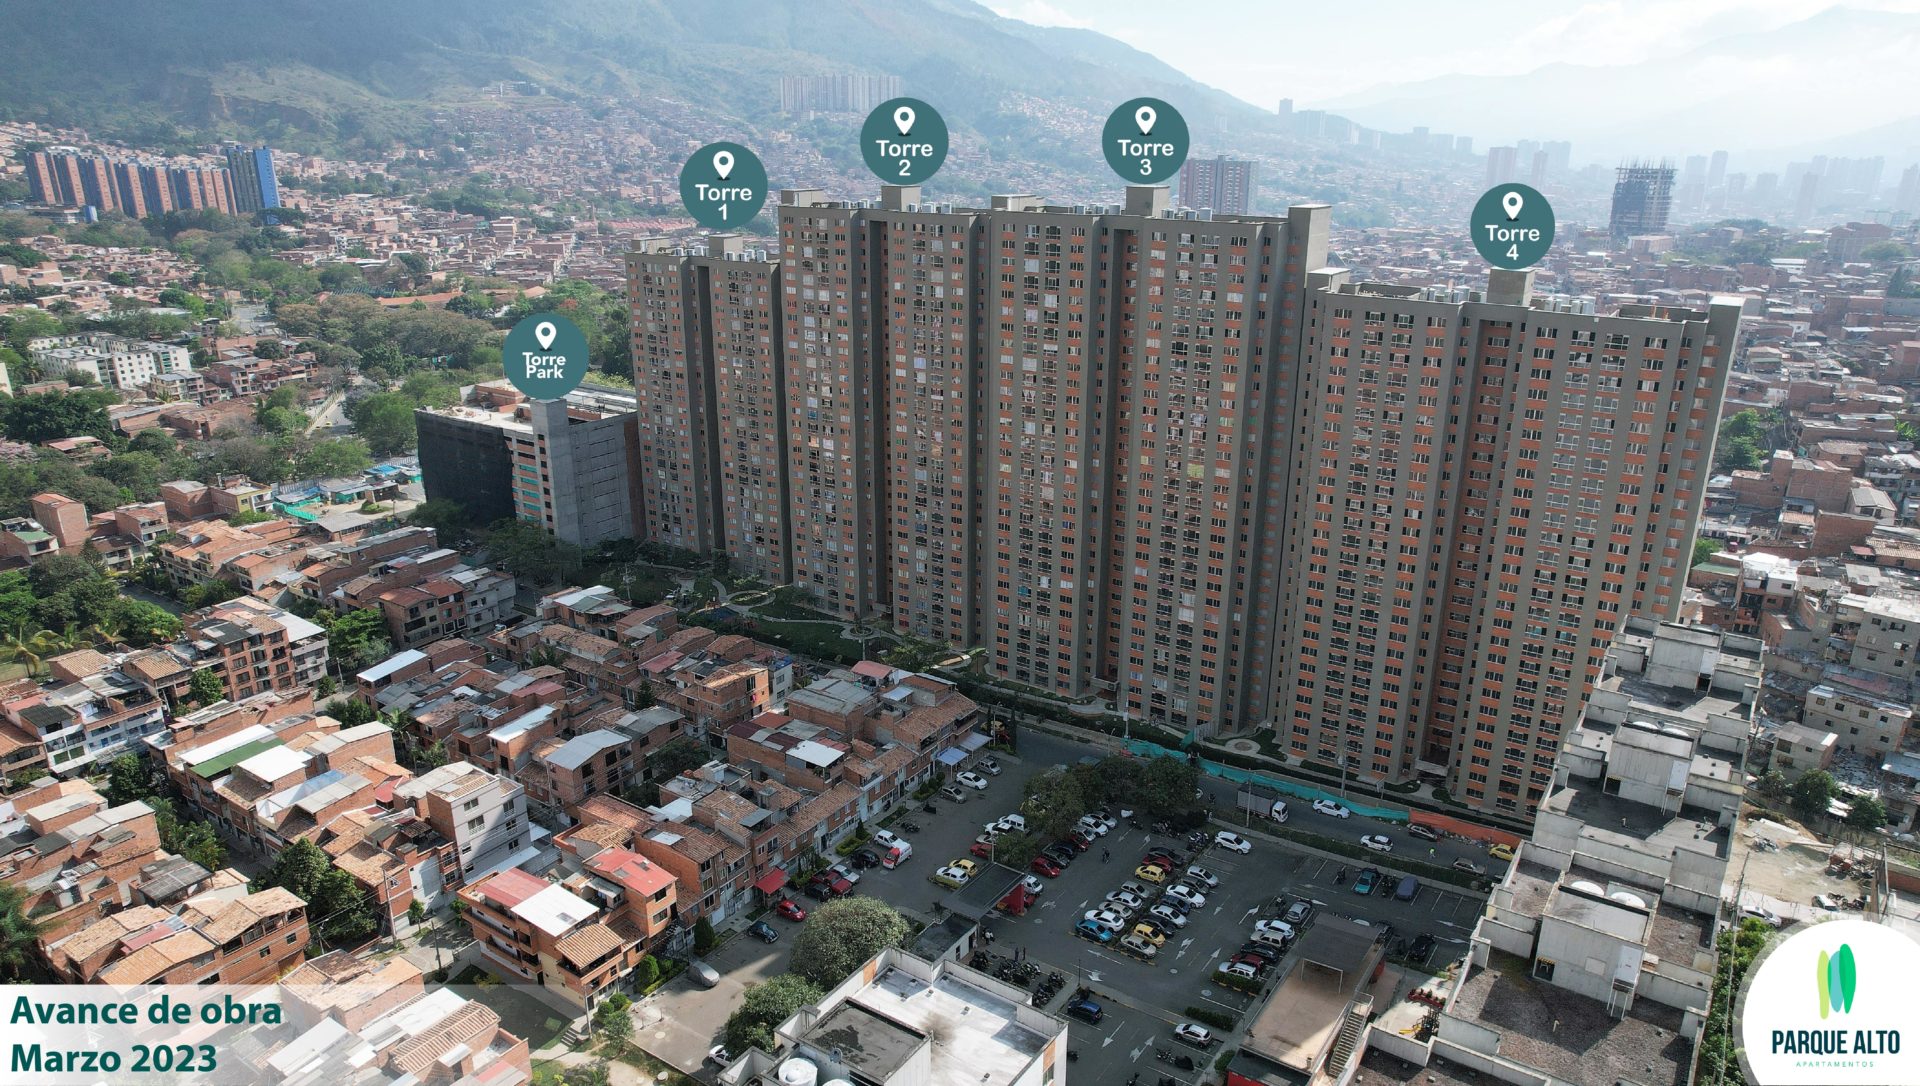 Viviendas, Apartamentos o Casas de Interés Social en Bello. Parque Alto